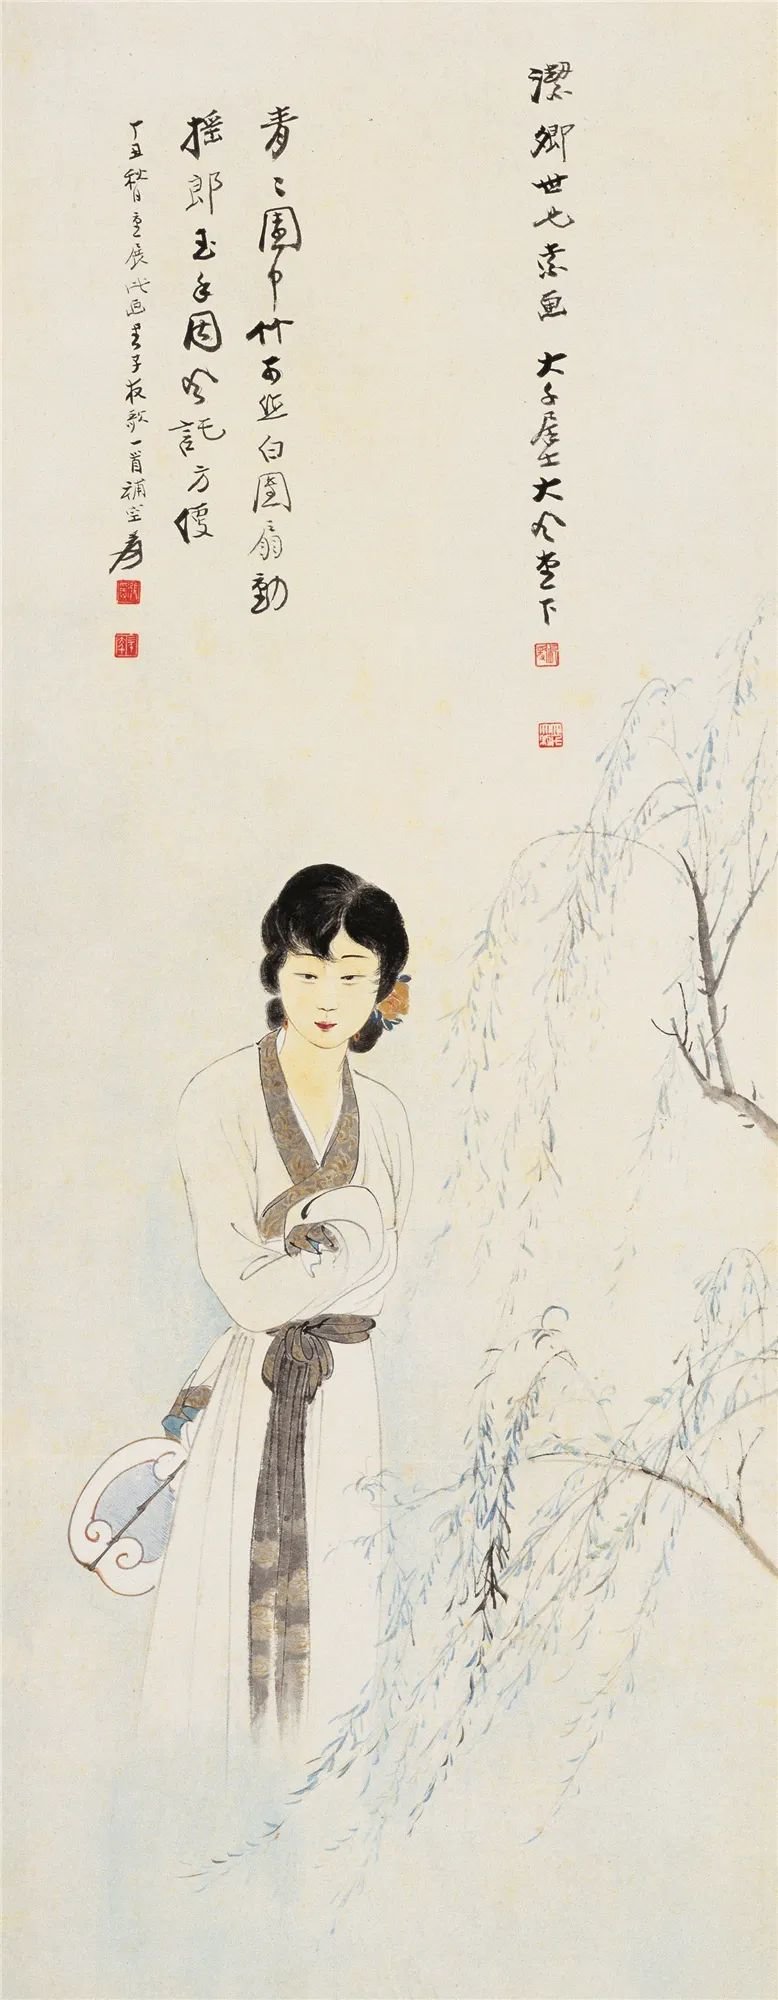 张大千 仕女 纸本设色 纵110.5厘米 横42.5厘米 1937年 北京画院藏